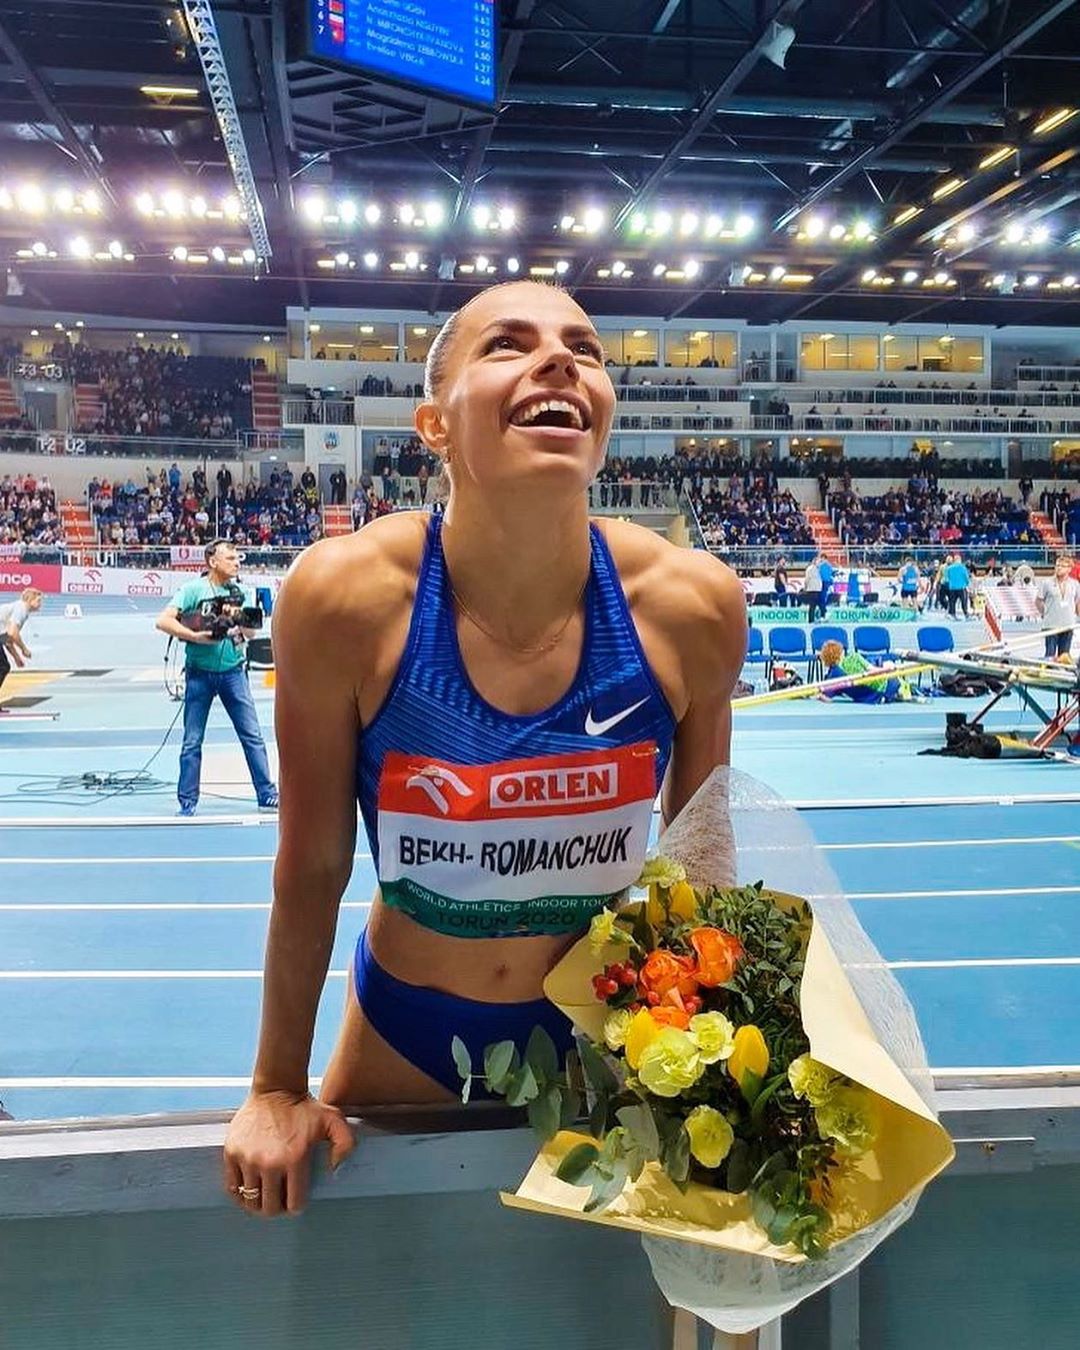 Легкоатлетка Марина Бех-Романчук победила на престижном турнире в Польше